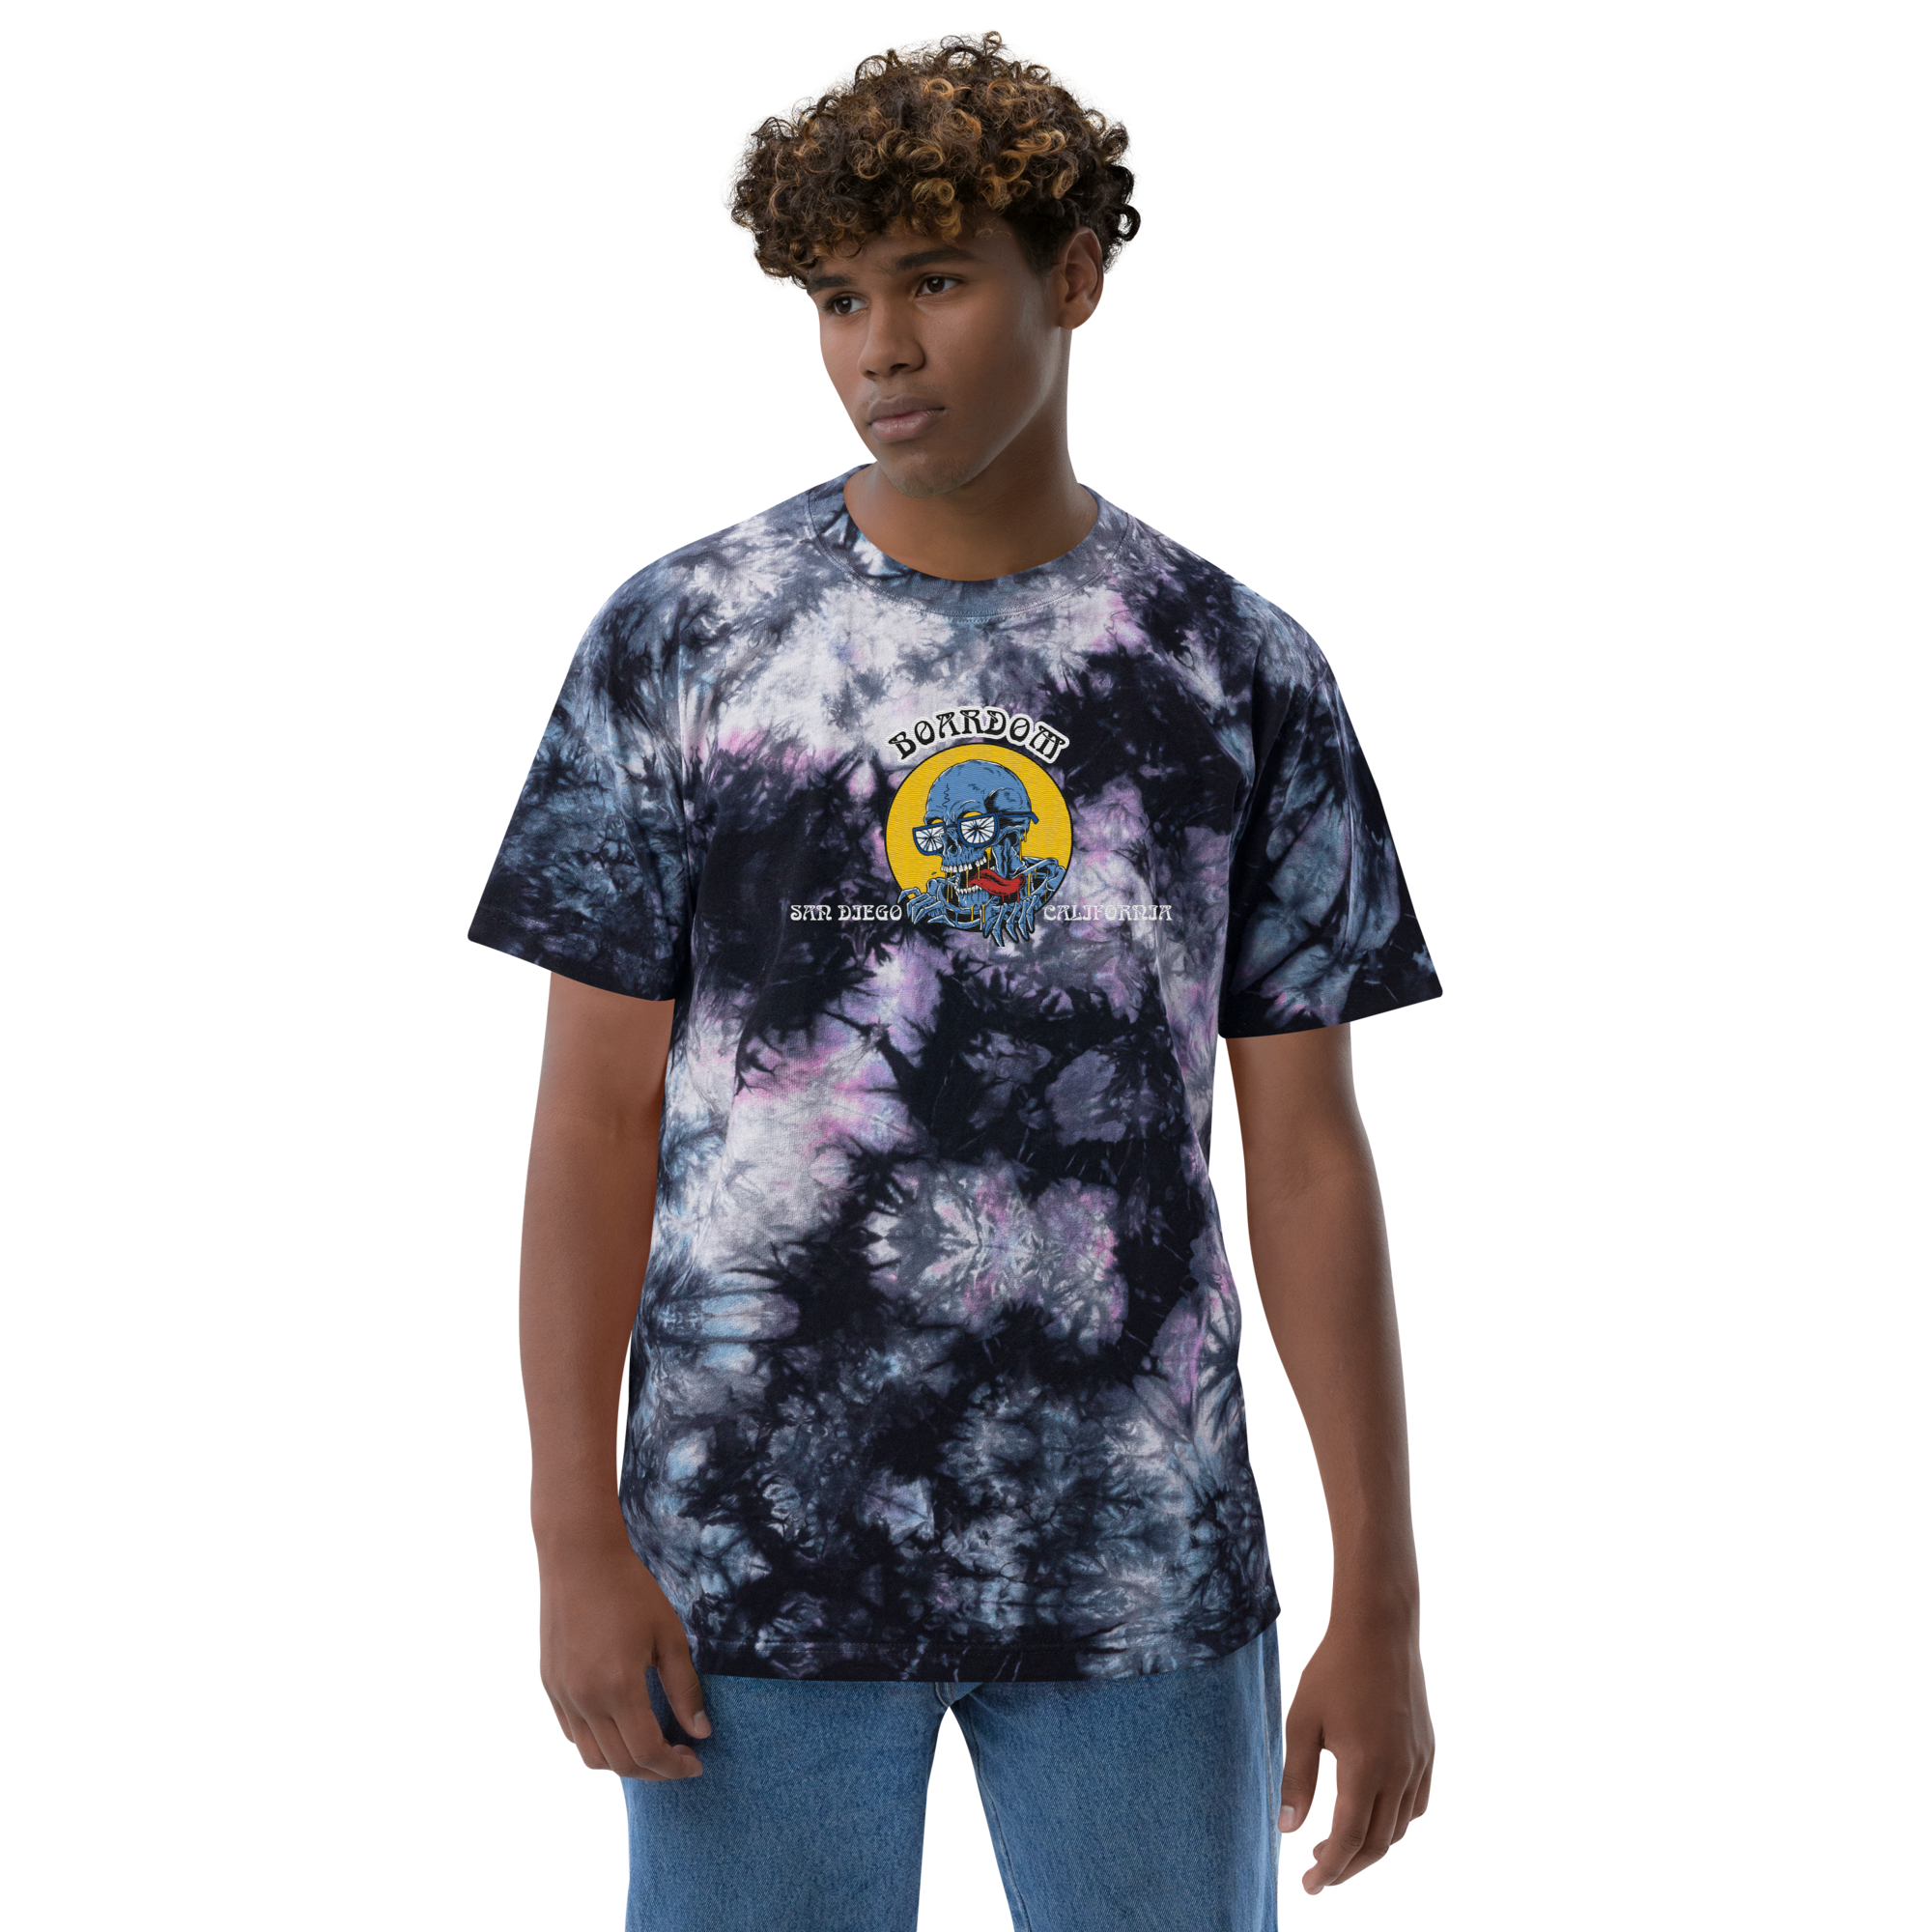 Camiseta Boardom con efecto tie-dye y enfermiza bordada